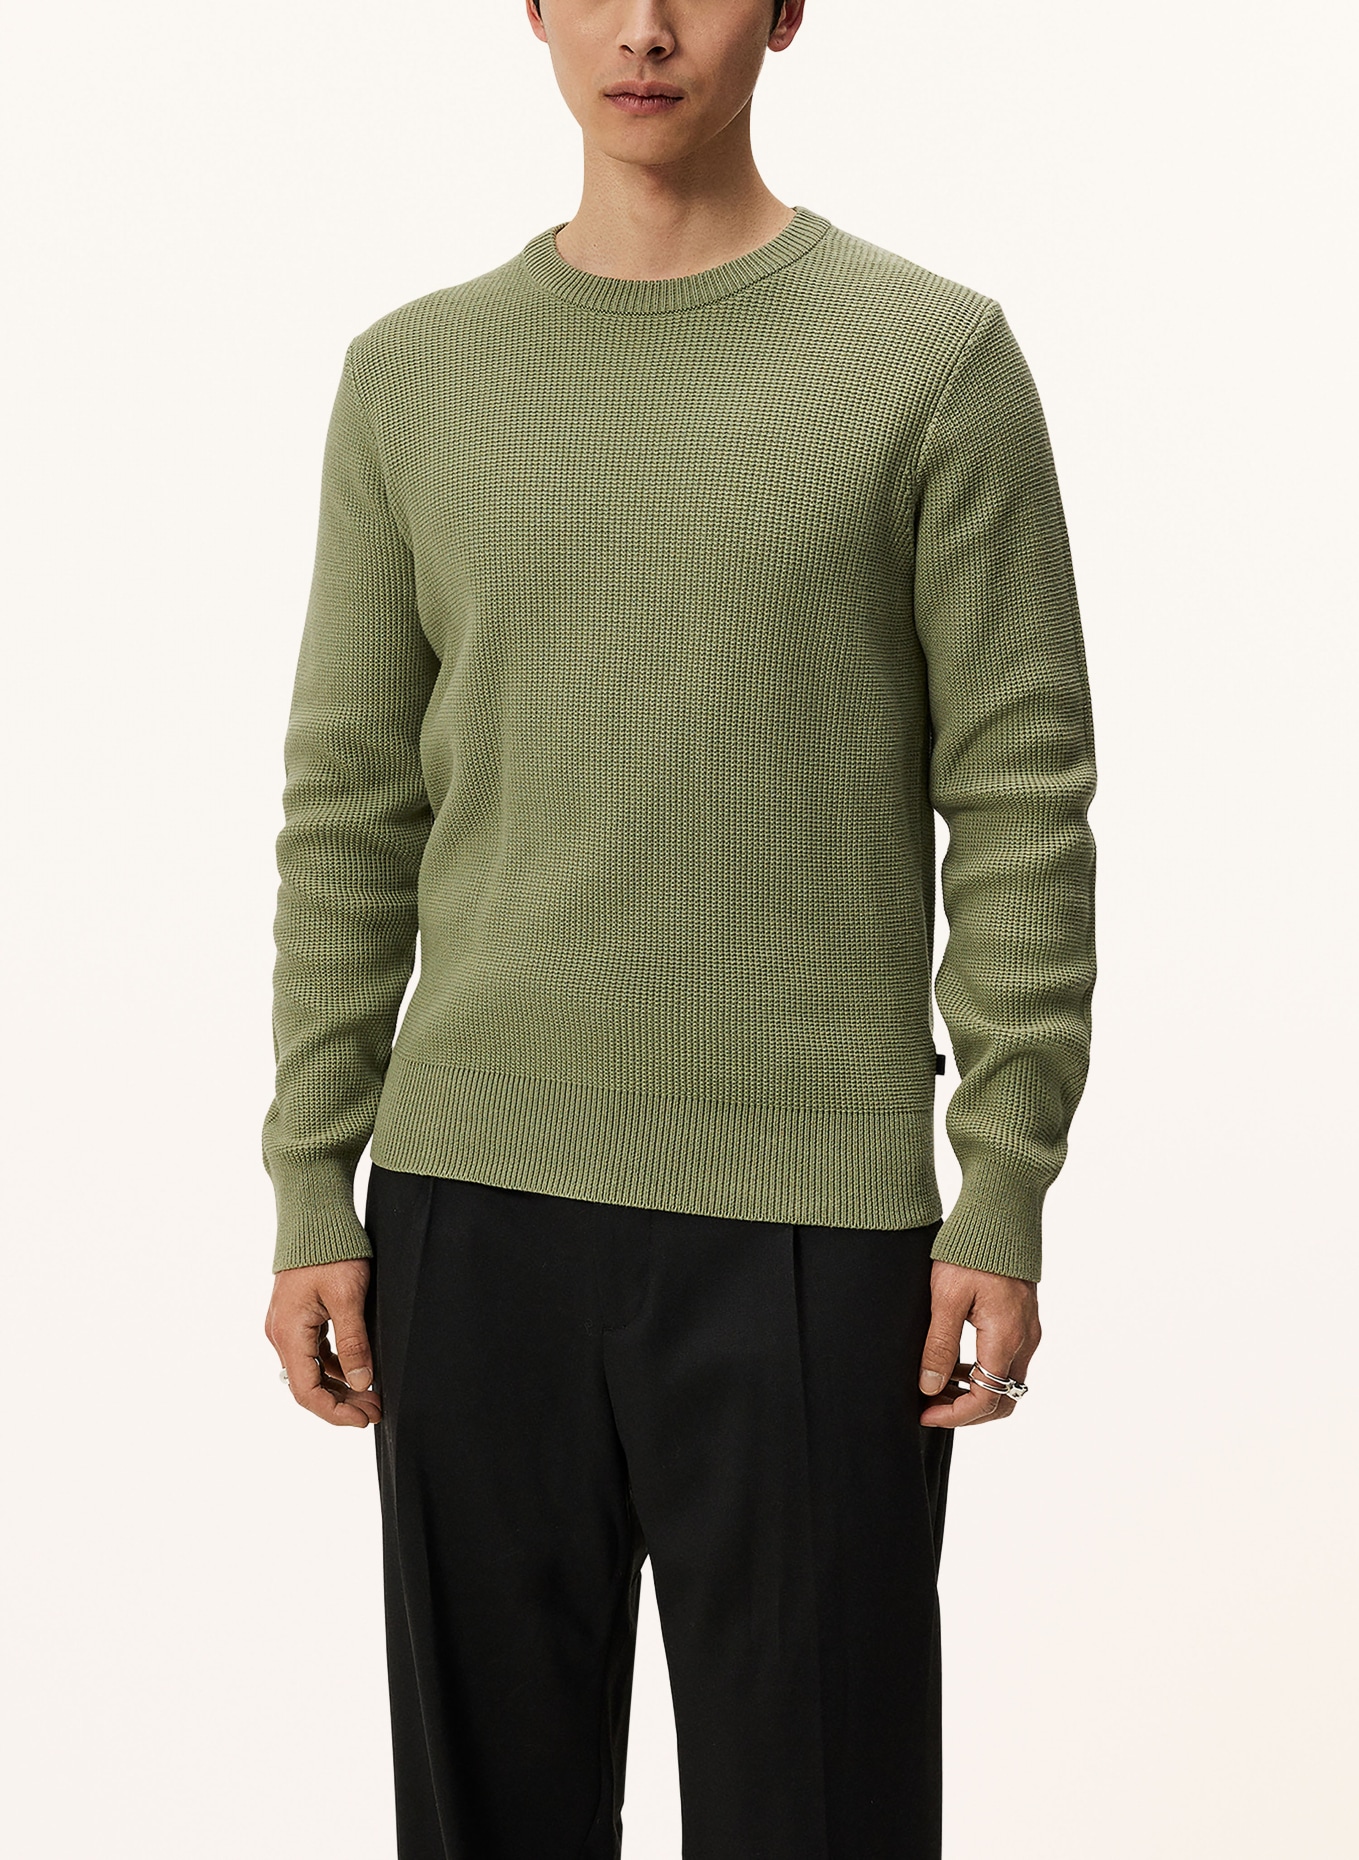 J.LINDEBERG Sweater, Color: OLIVE (Image 4)